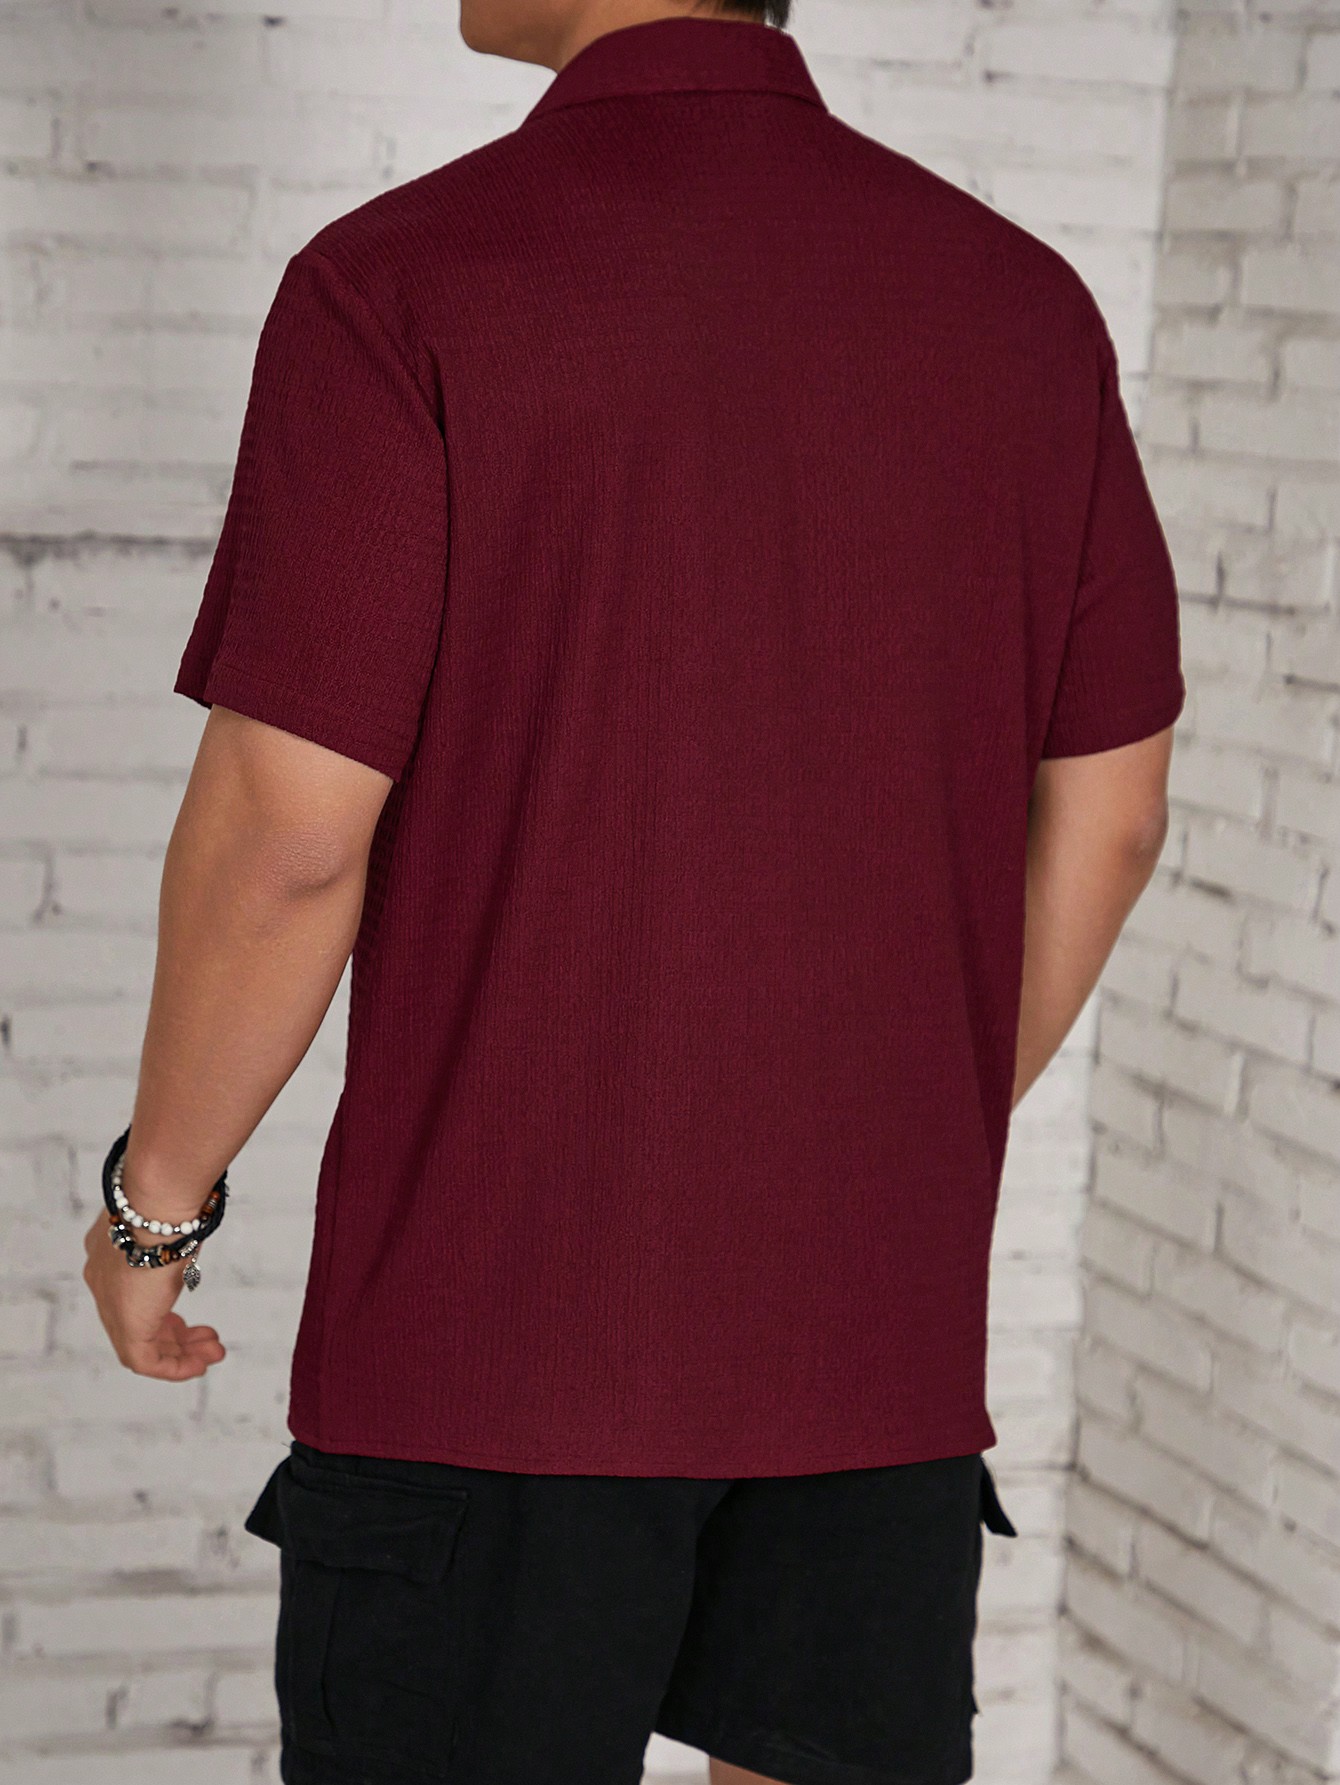 Мужская текстурированная рубашка на пуговицах с коротким рукавом Manfinity Homme, расти роуз мужская повседневная рубашка с коротким рукавом на пуговицах бежевый